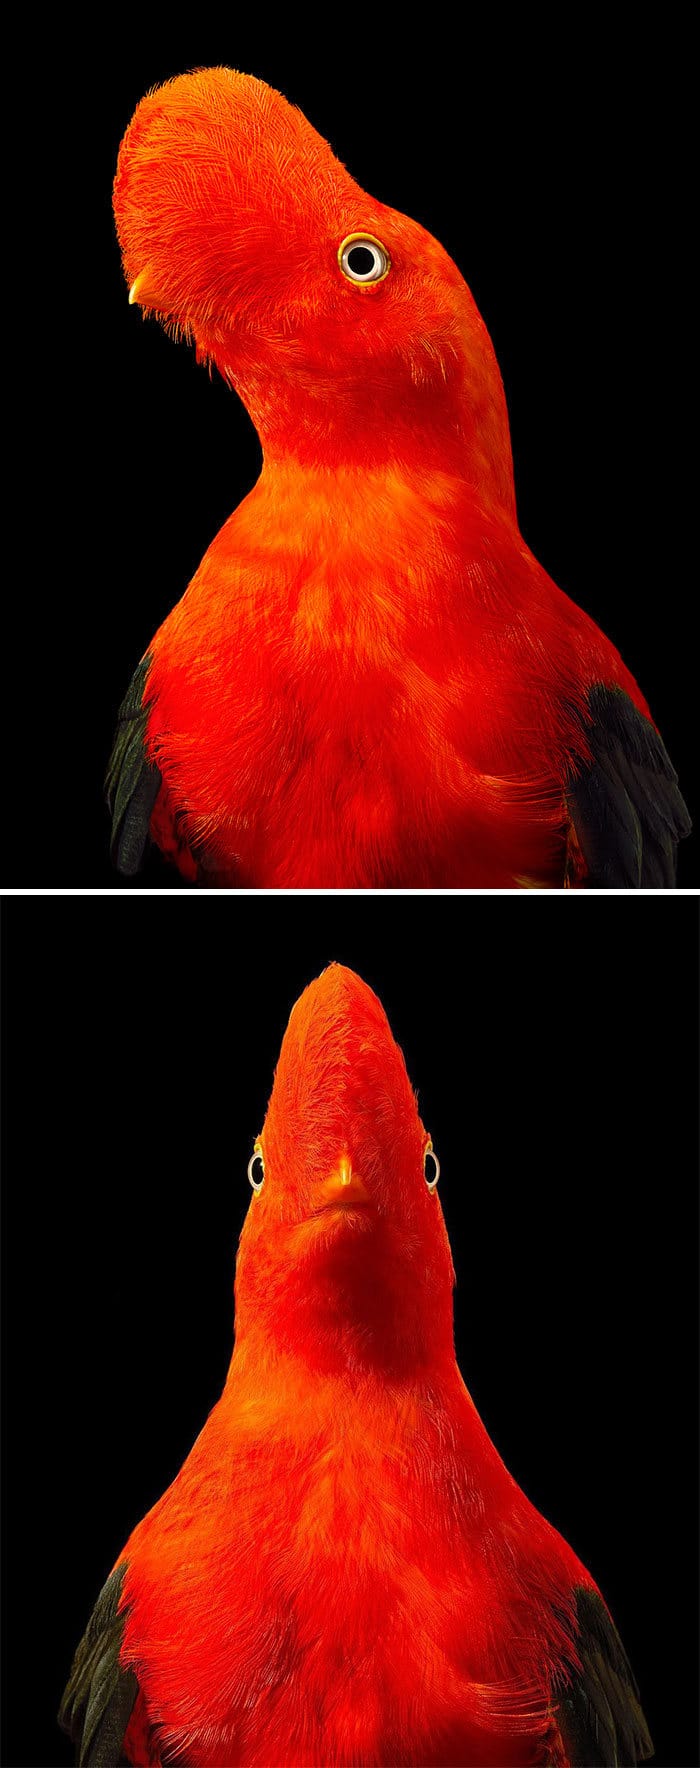 O fotógrafo tira retratos de pássaros e os resultados são sublimes 21